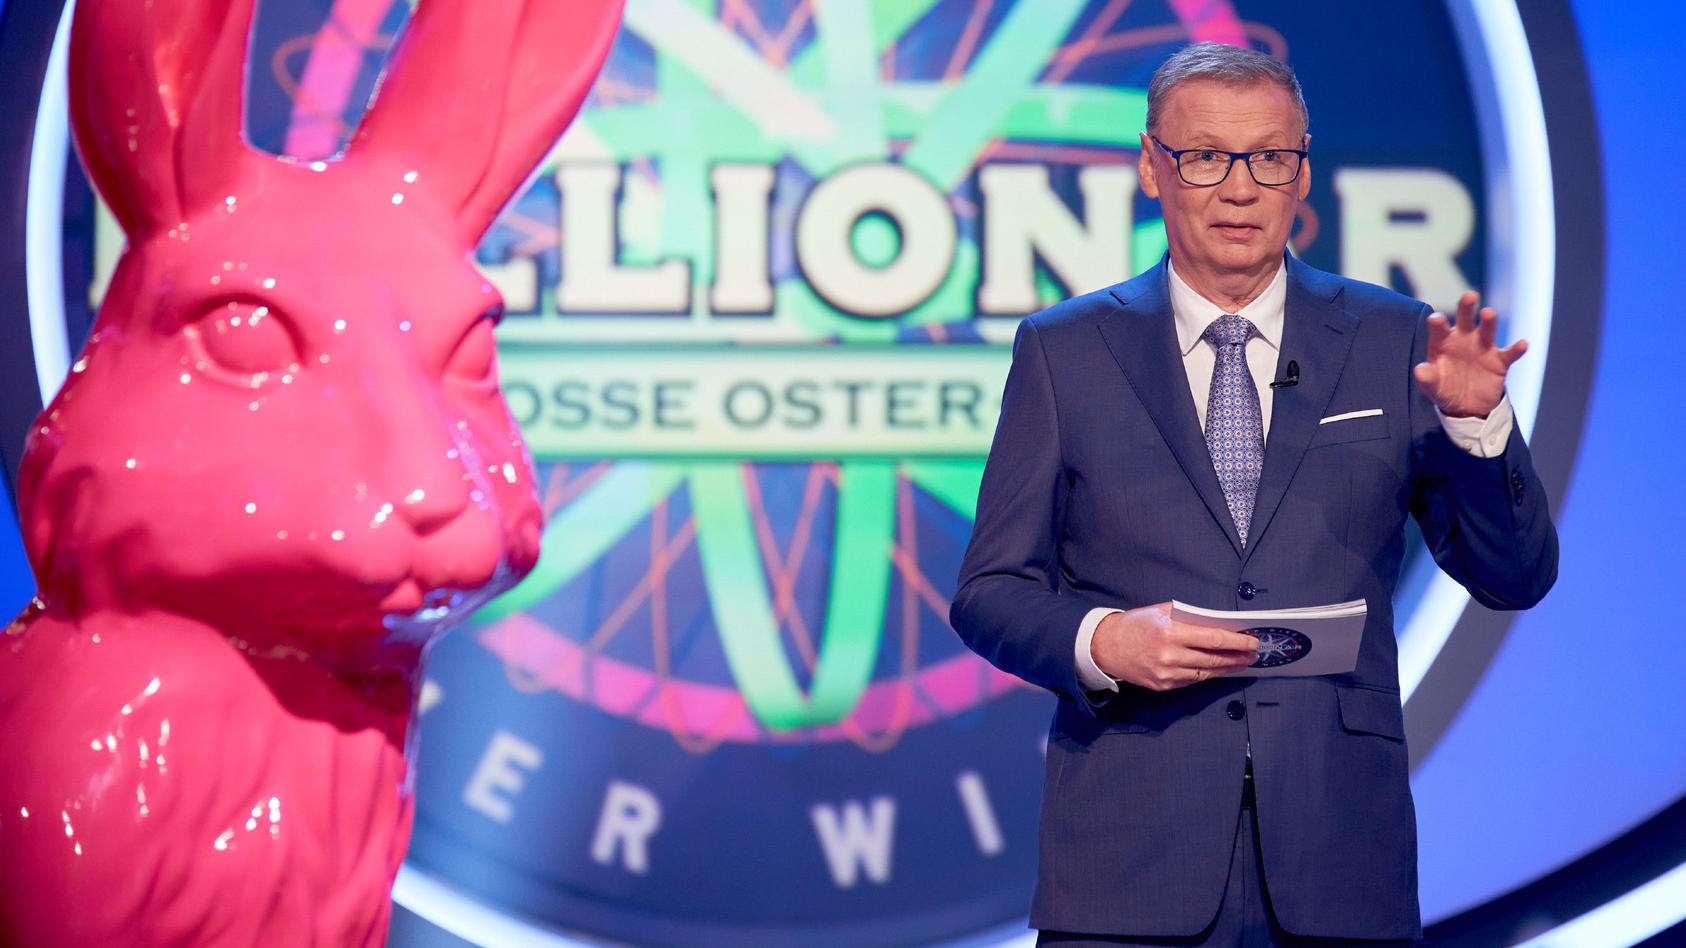 Es ist einfach ein Fest! Am Ostermontag stellt sich "Wer wird Millionär?"-Moderator Günther Jauch erstmals selbst als Joker zur Verfügung